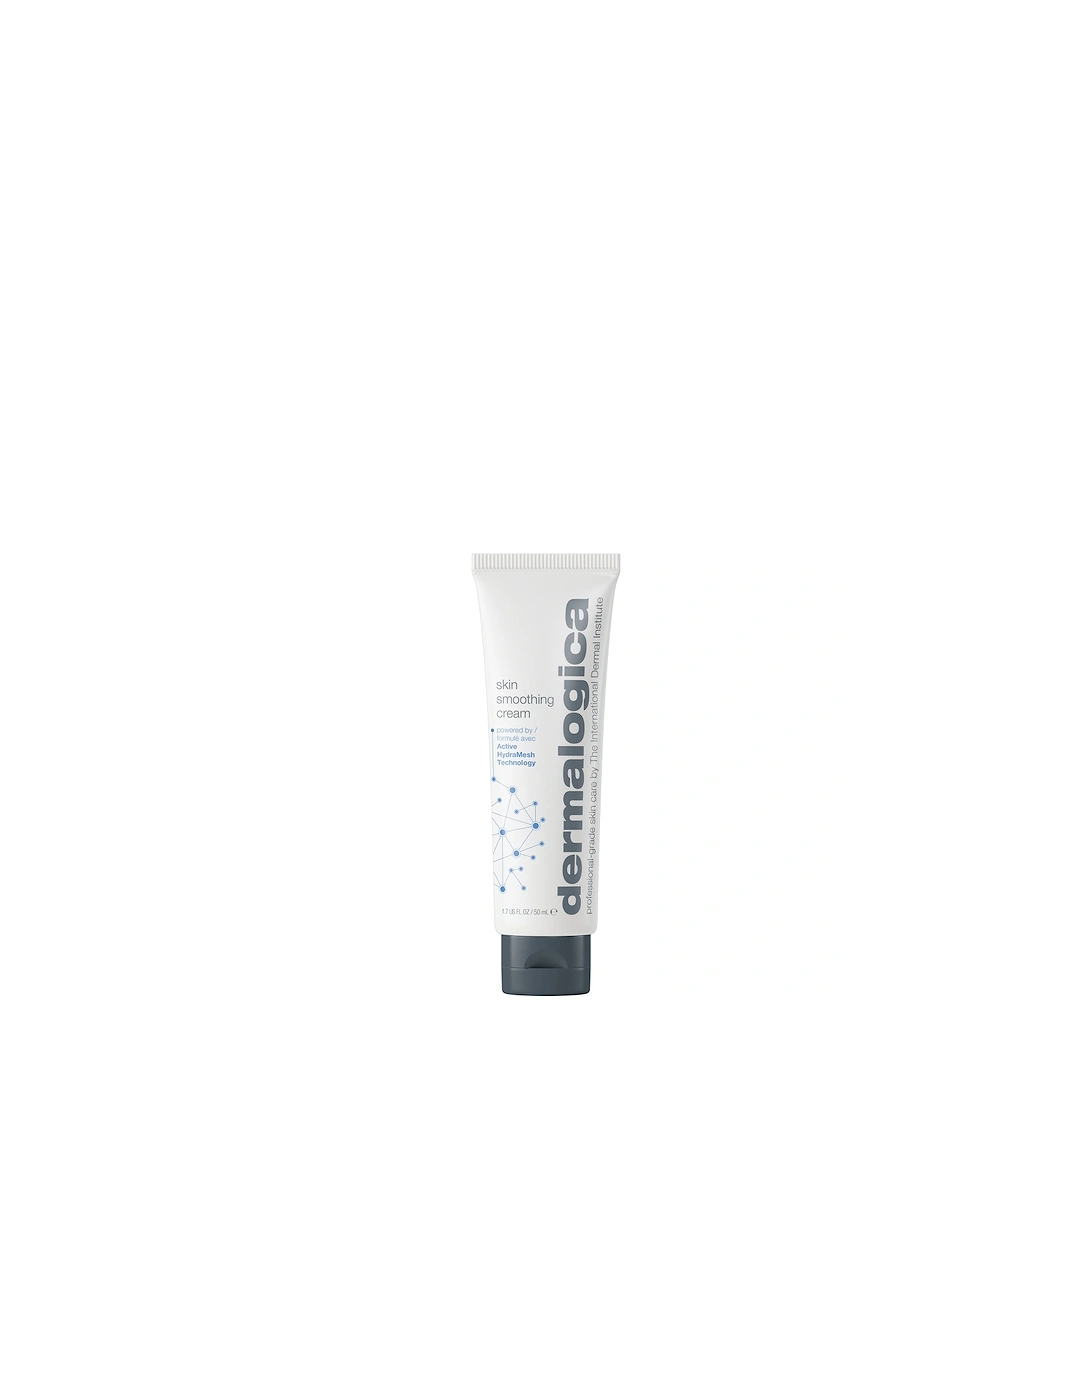 Skin Smoothing Cream 50ml - Dermalogica, 2 of 1